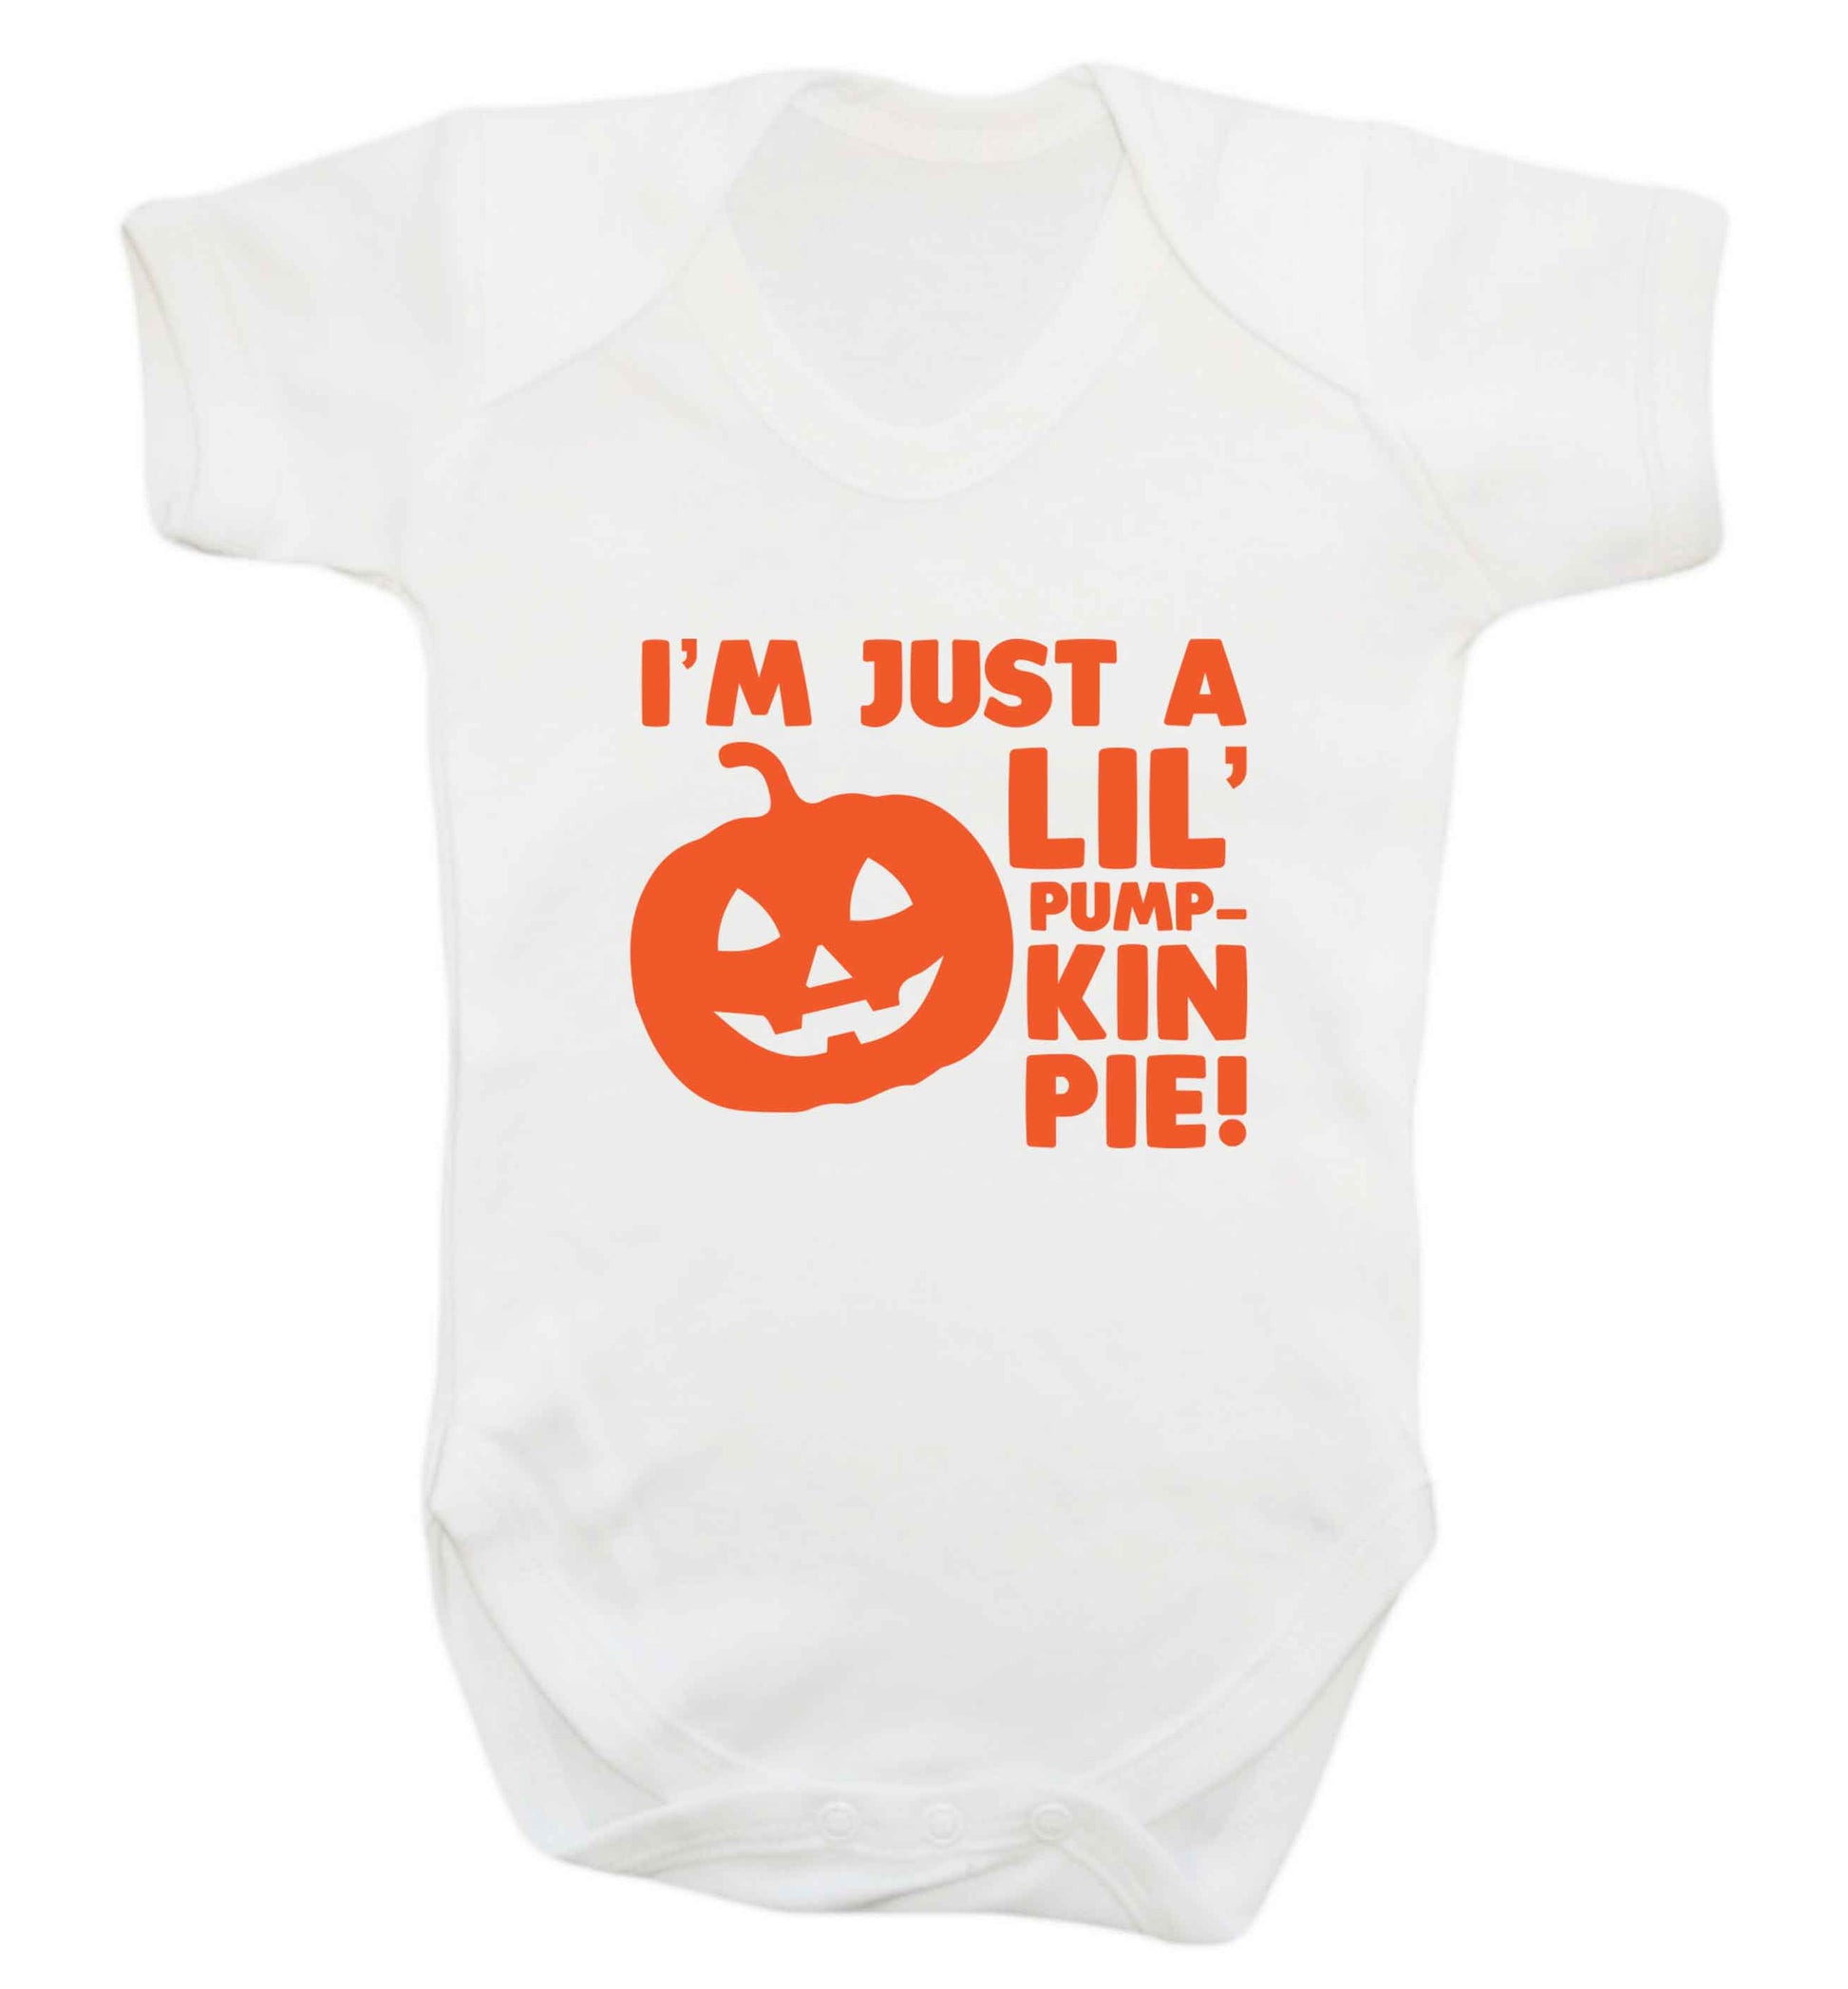 I'm just a lil' pumpkin pie baby vest white 18-24 months